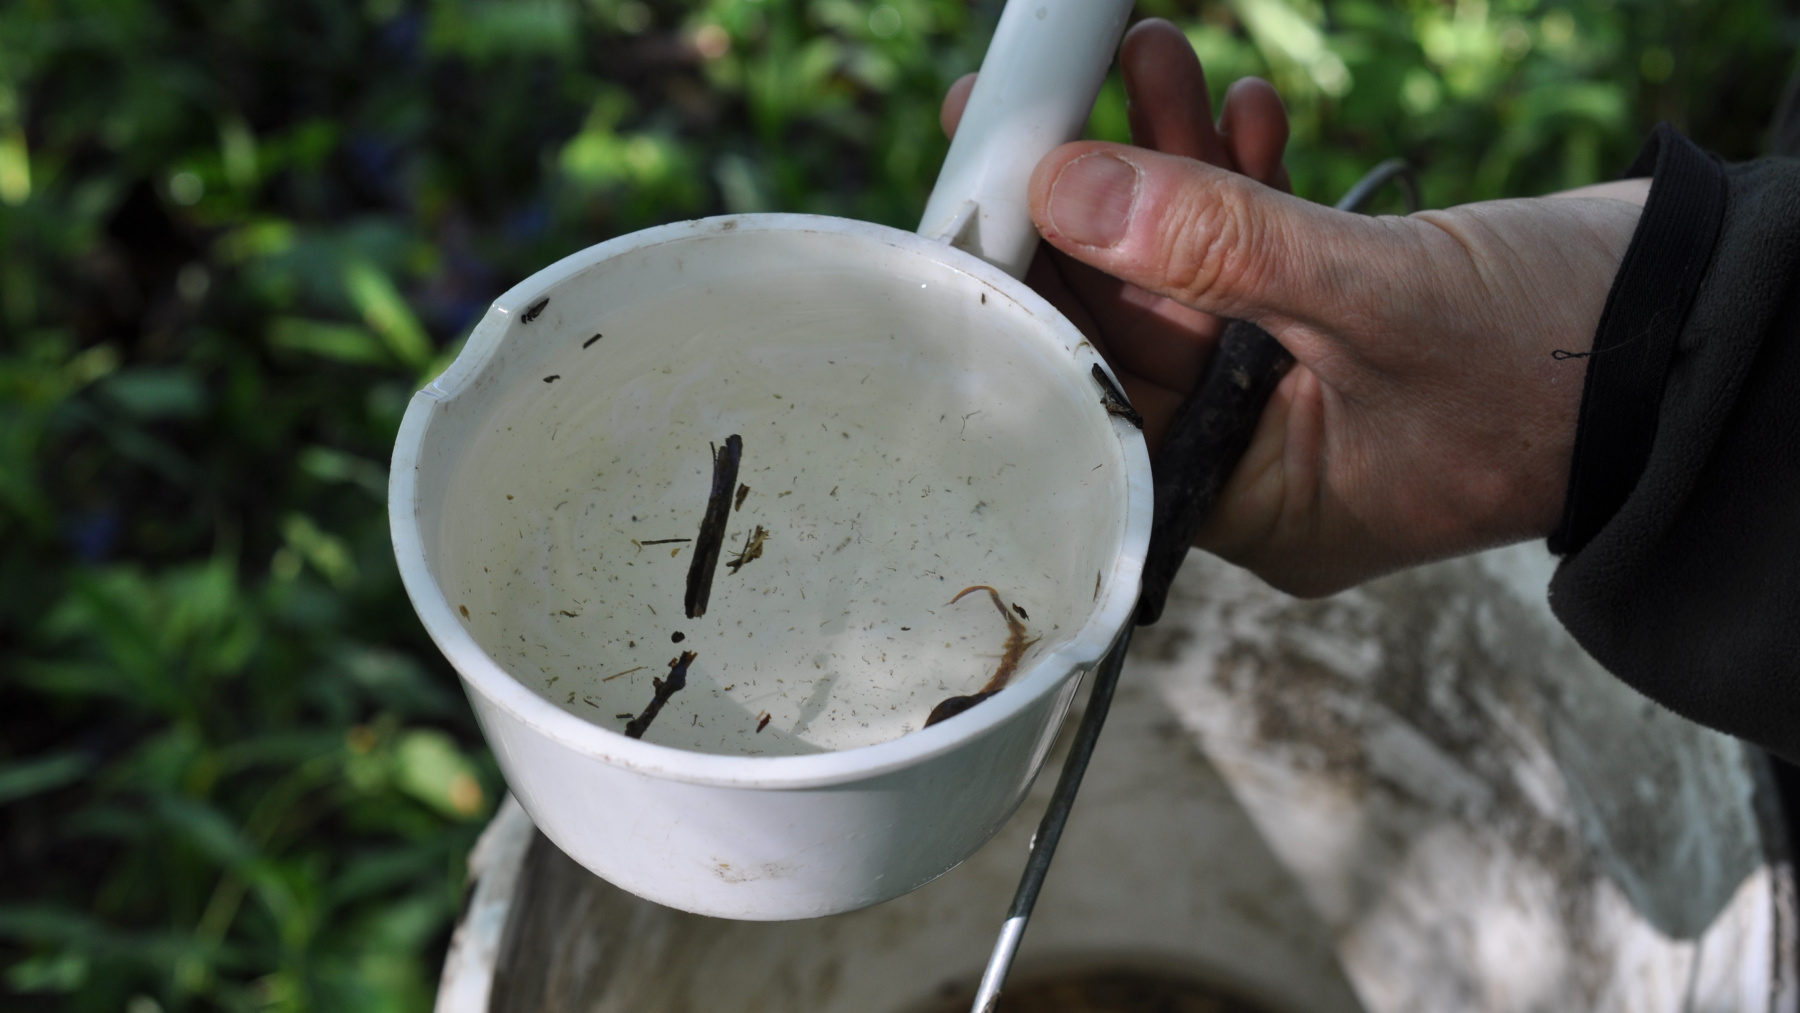 Rozoznať prvé štádiá lariev komárov nie je celkom jednoduché. Treba si všímať pohyb